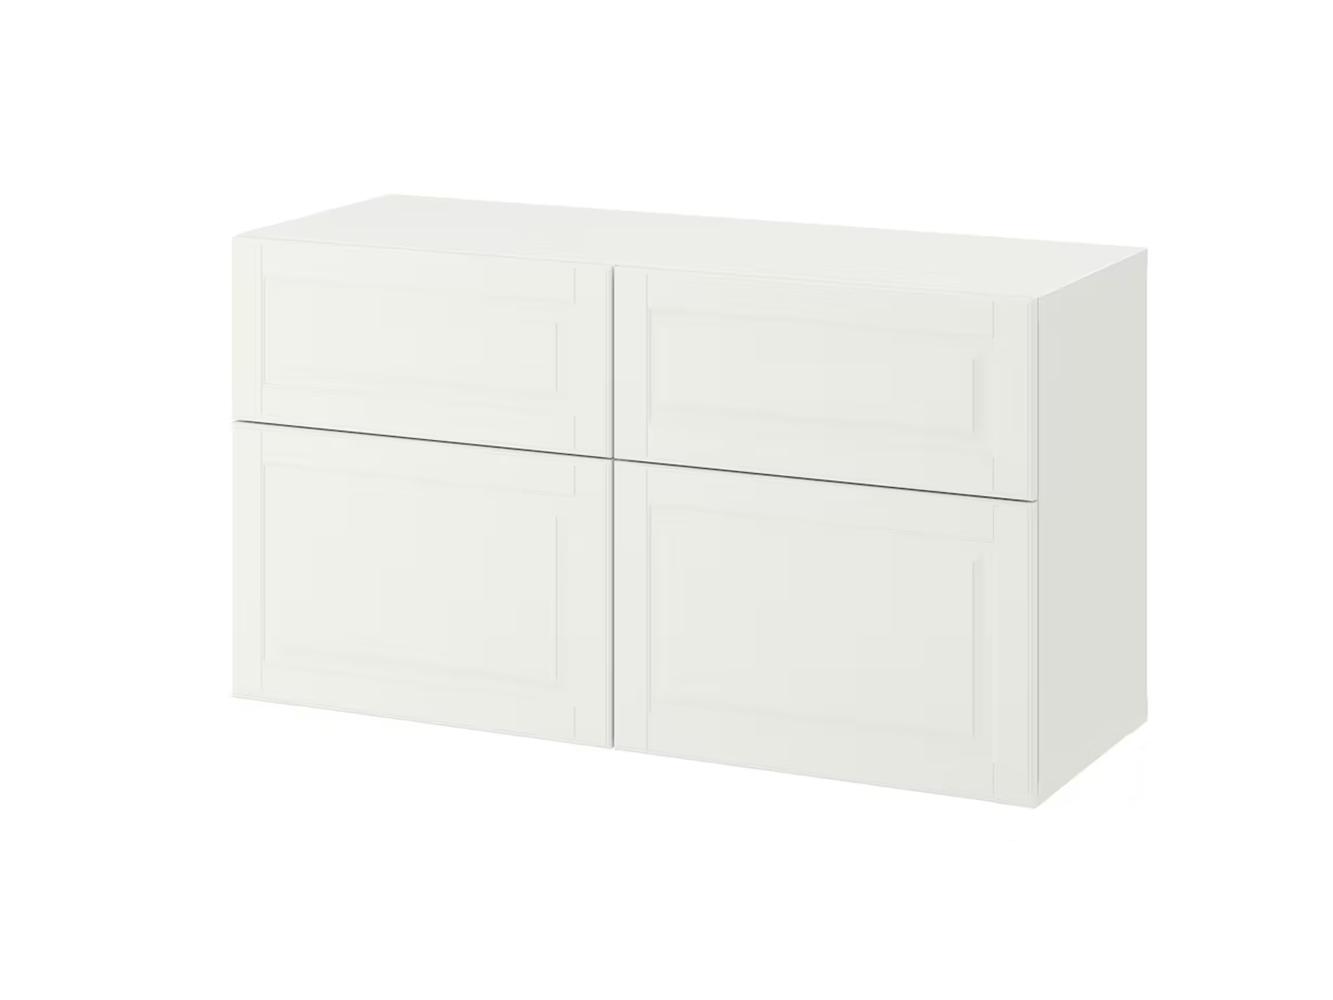 Комод Беста 118 white ИКЕА (IKEA)  изображение товара